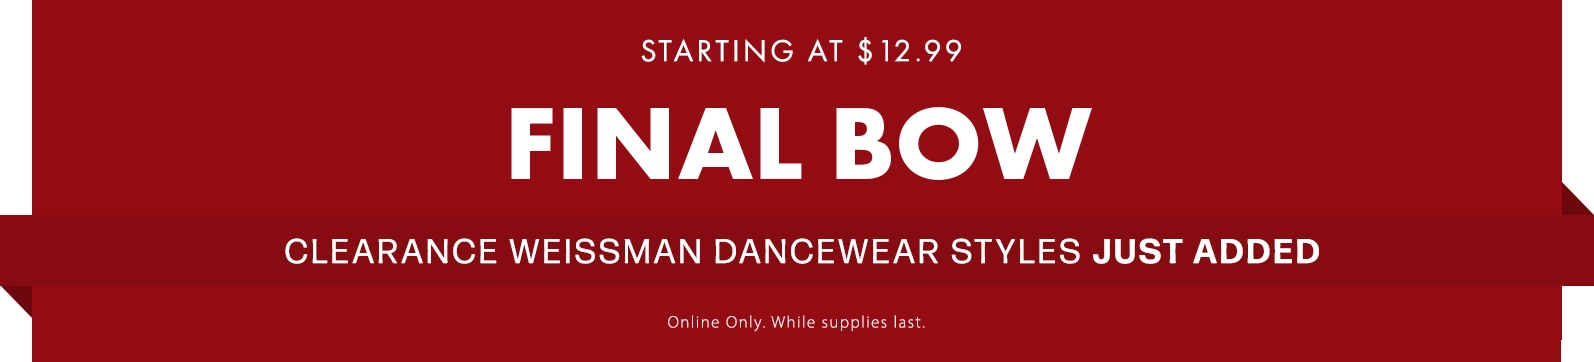 Weissman Dancewear Clearance Styles